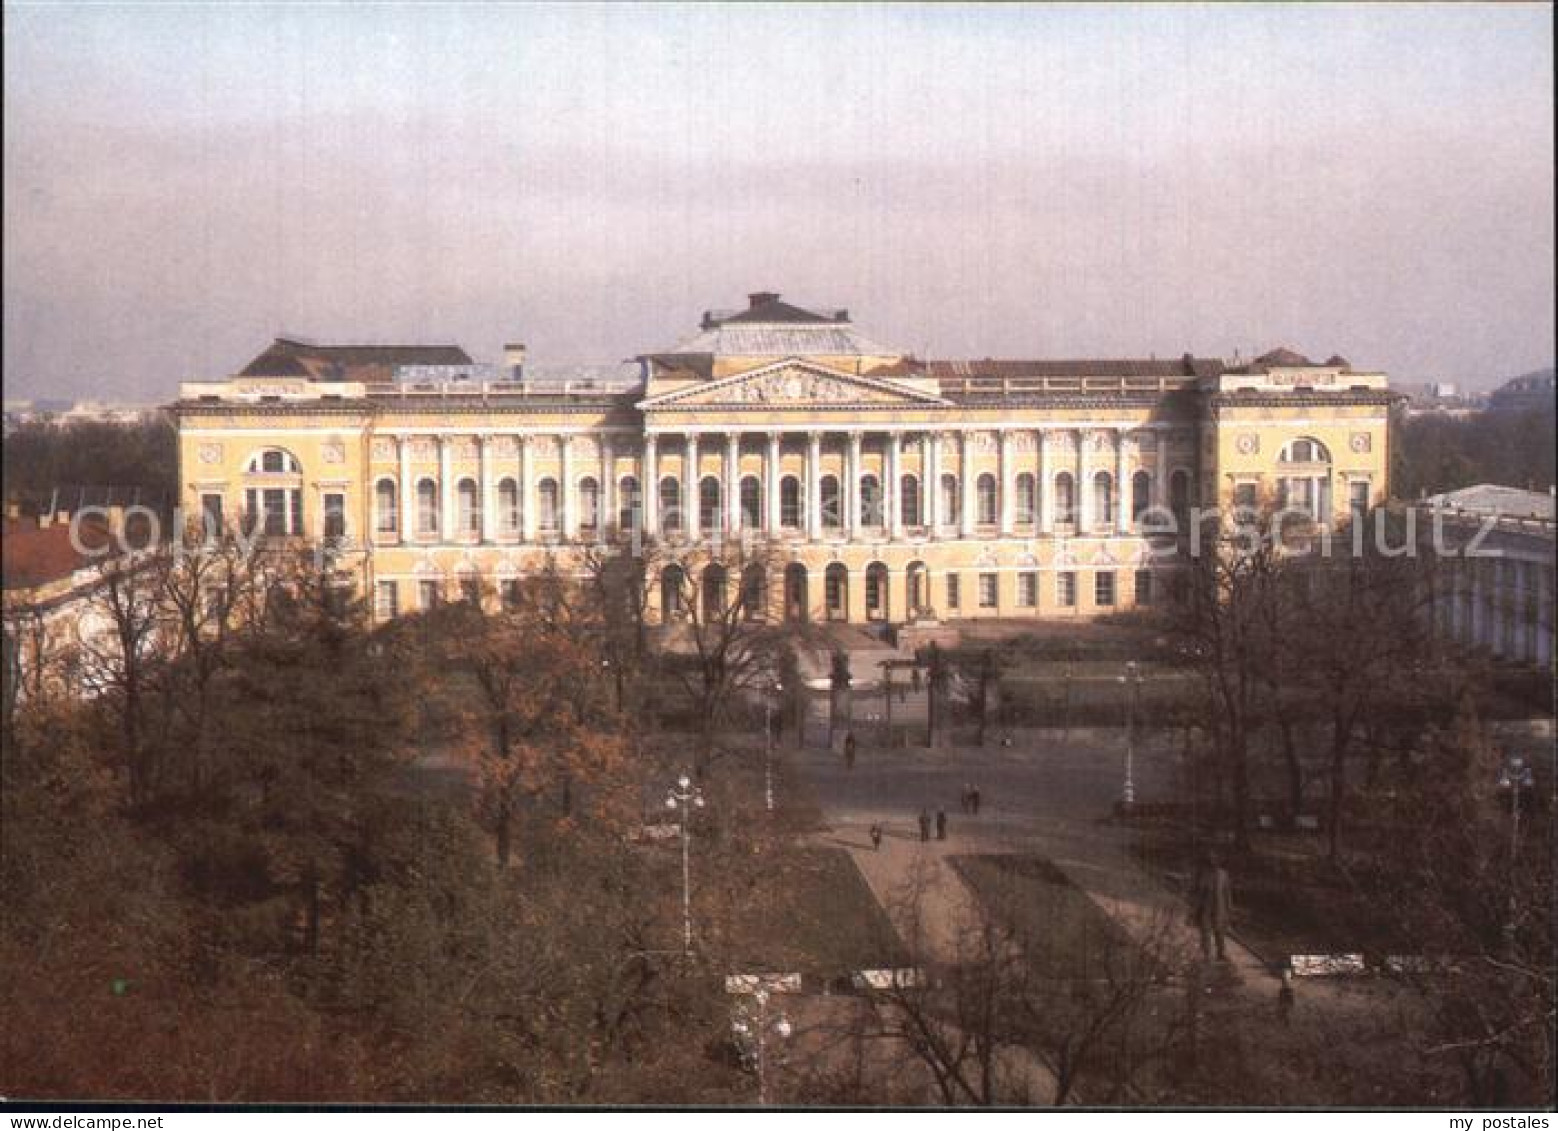 72575319 St Petersburg Leningrad Russian Museum  Russische Foederation - Rusland